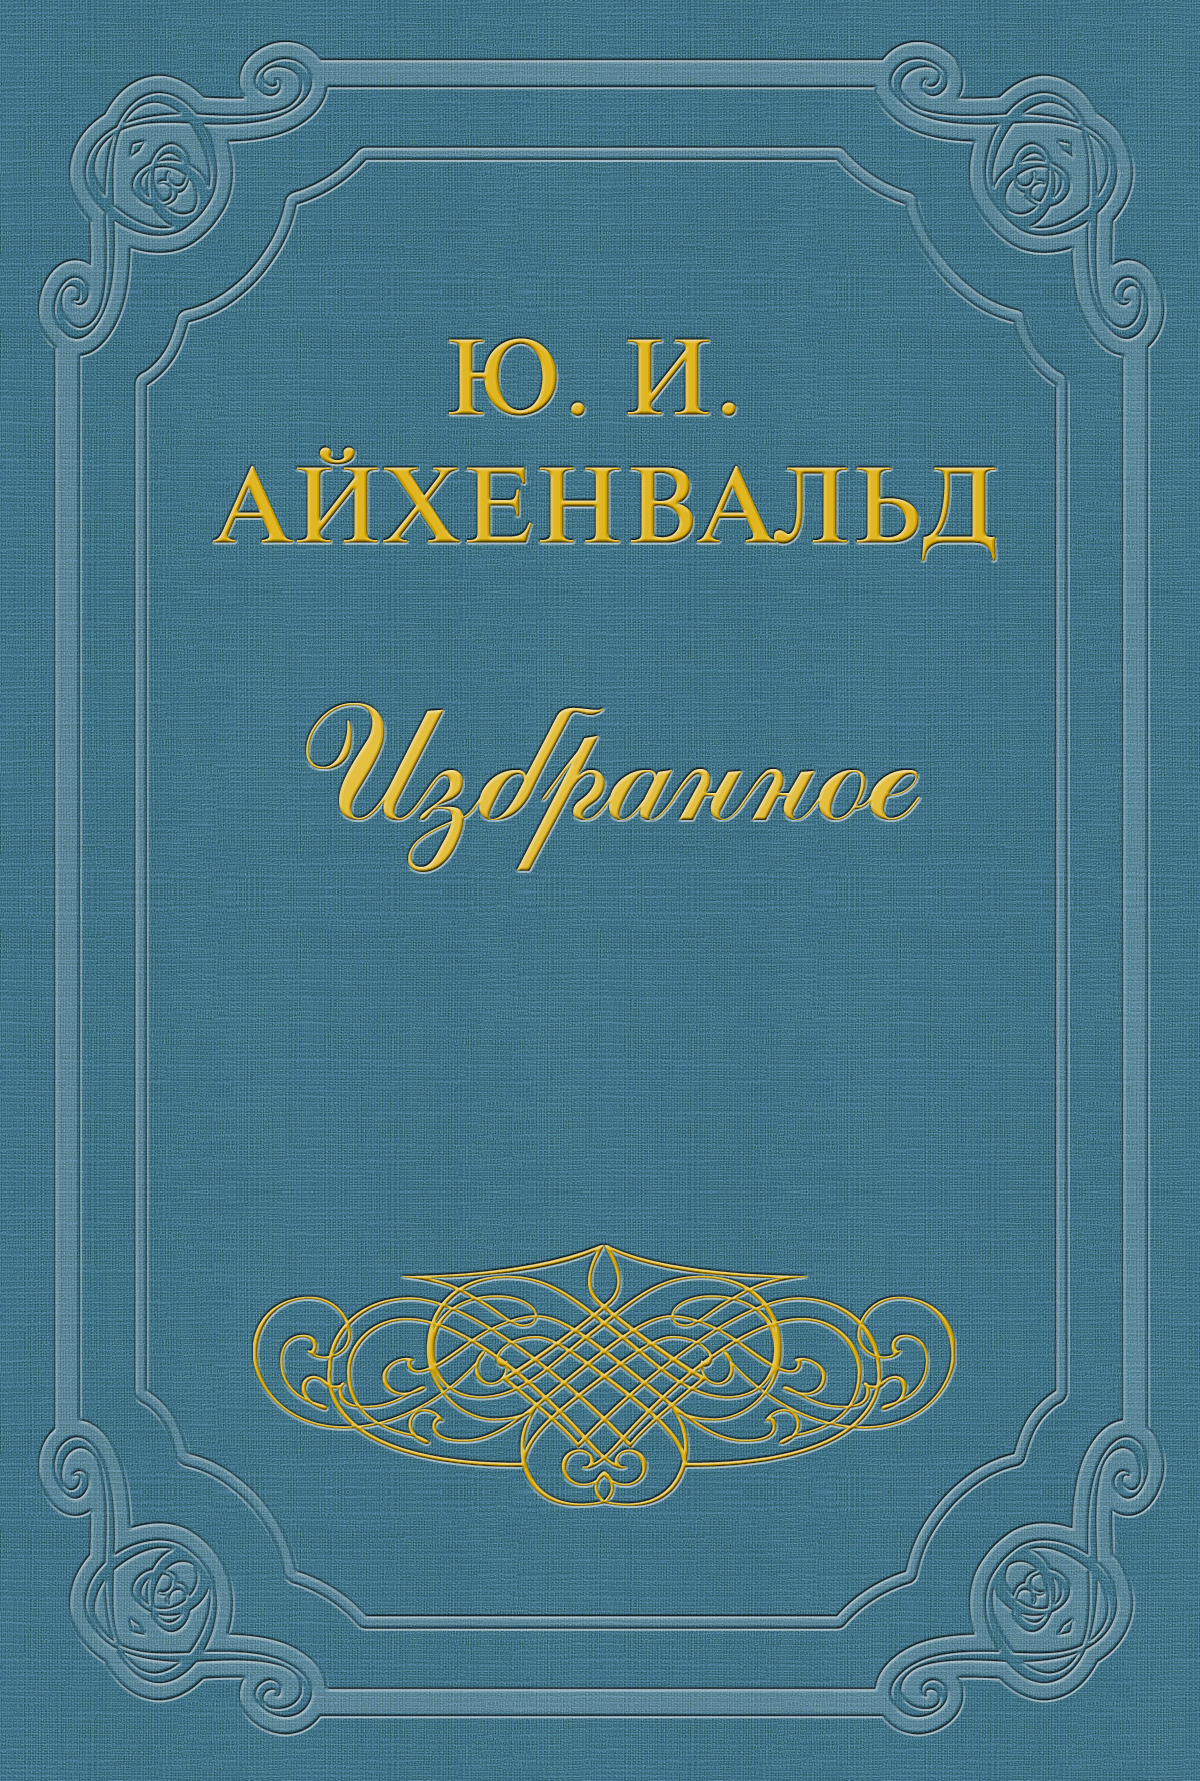 Книга Борис Зайцев из серии , созданная Юлий Айхенвальд, может относится к жанру Критика. Стоимость книги Борис Зайцев  с идентификатором 2594615 составляет 14.99 руб.